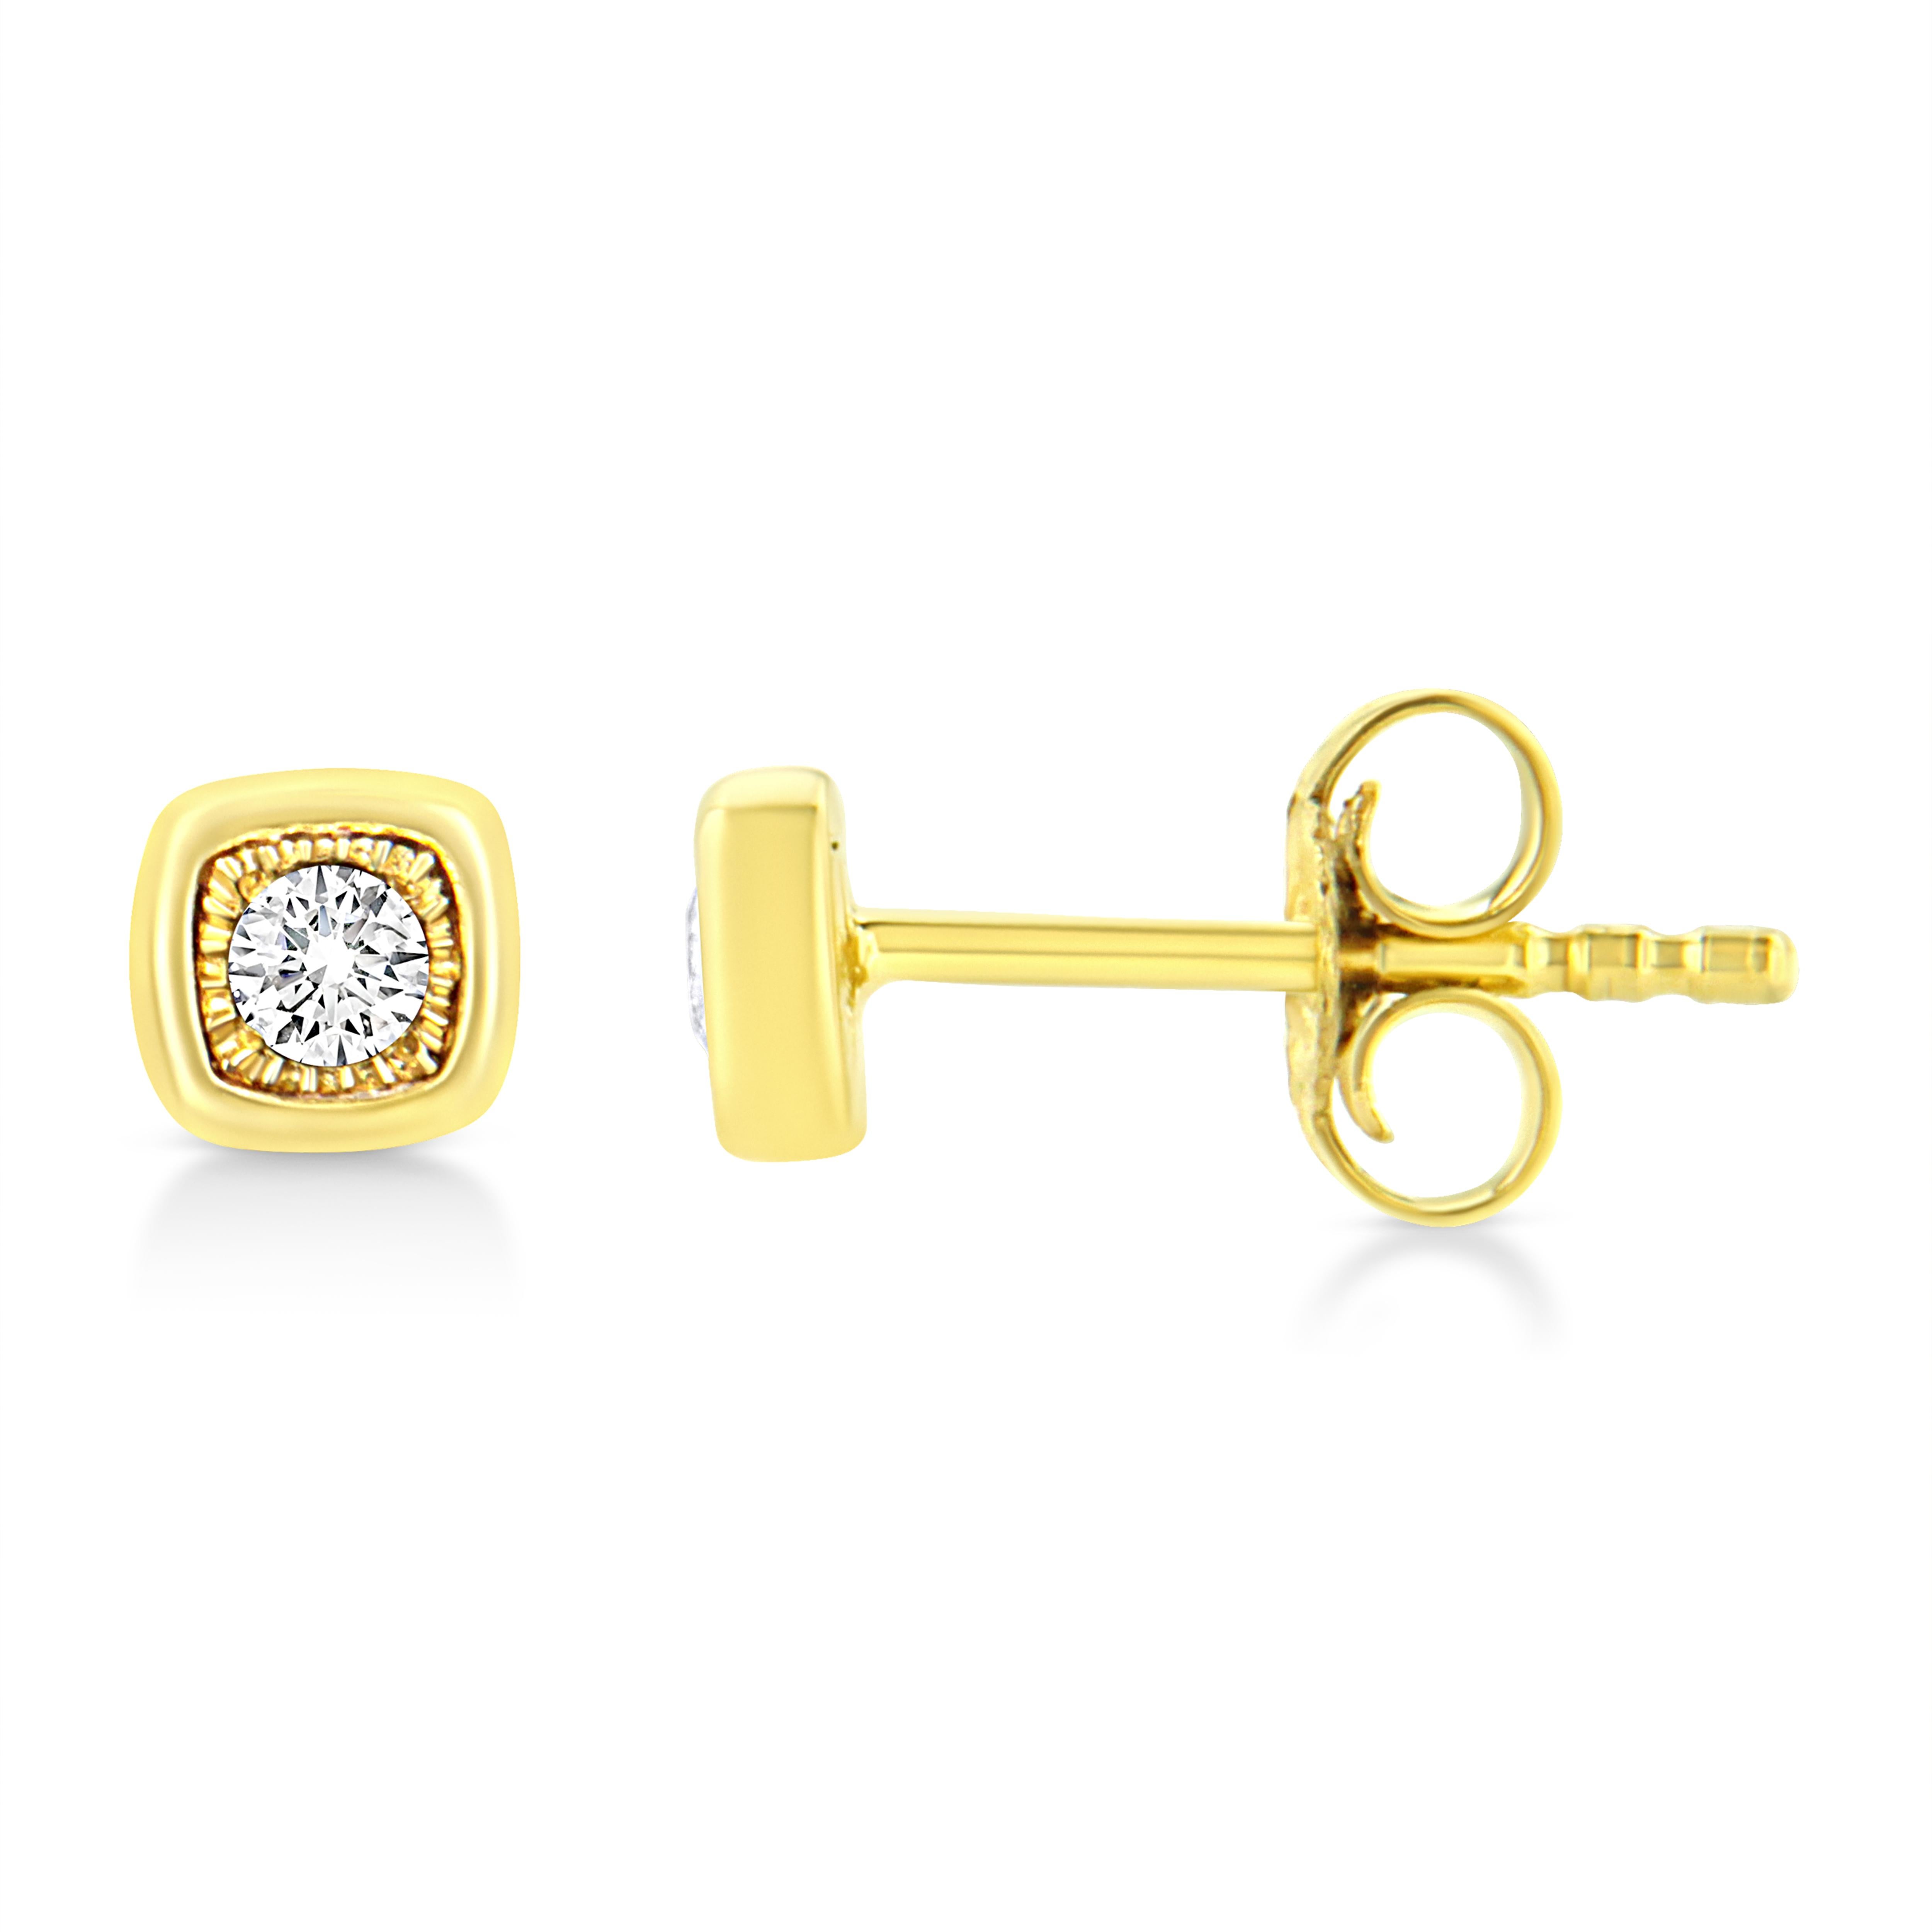 Diese kissenförmigen Ohrstecker sind aus 10 Karat gelbvergoldetem Sterlingsilber gefertigt und mit 1/10ct TDW Diamanten besetzt. In jedem Ohrring funkelt ein einzelner runder Diamant in einer Wunderfassung, die das Funkeln des Ohrrings noch